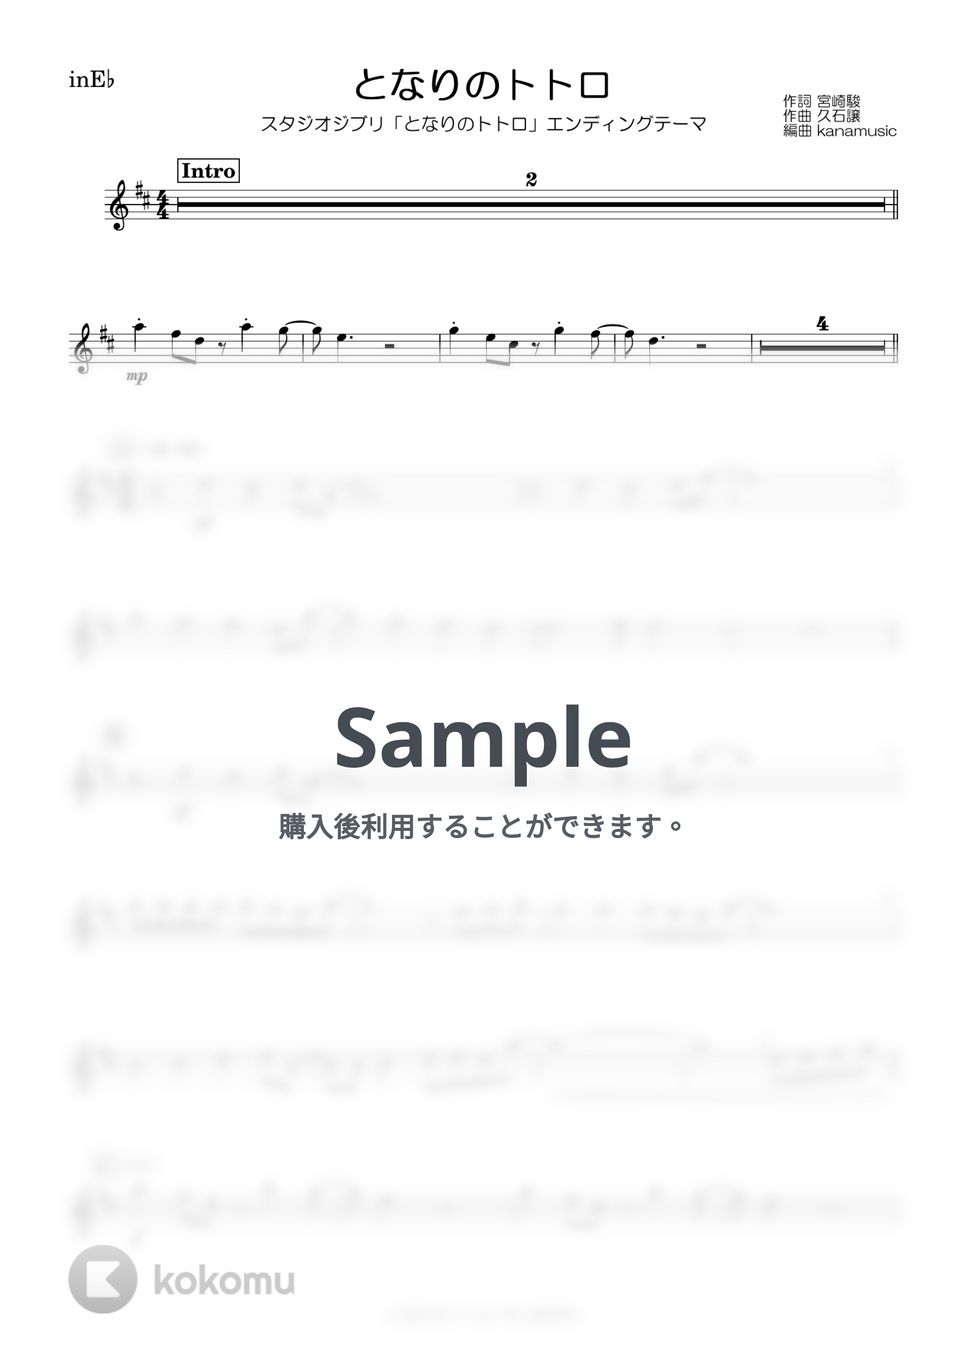 井上あずみ - となりのトトロ (E♭) by kanamusic